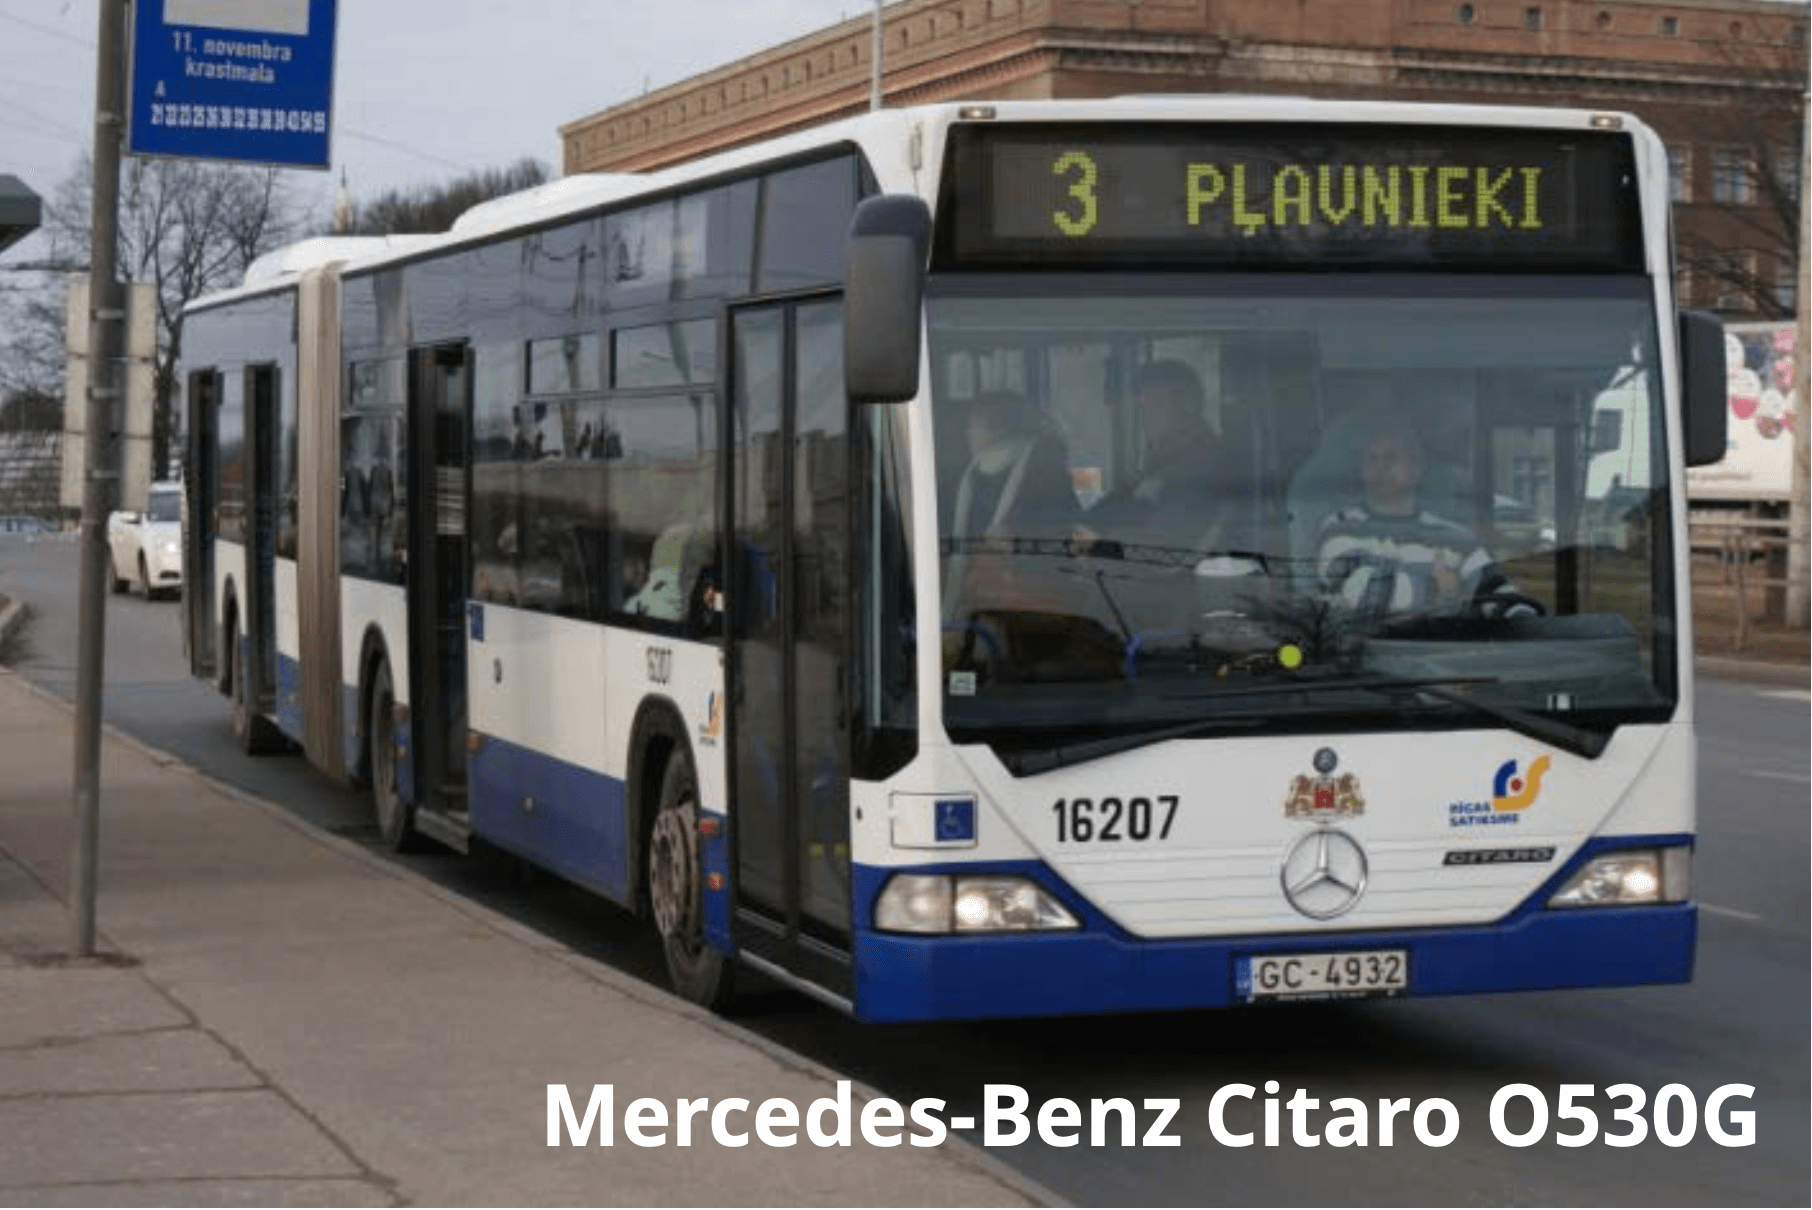 Fuel consumption monitoring on Mercedes-Benz Citaro O530G city bus